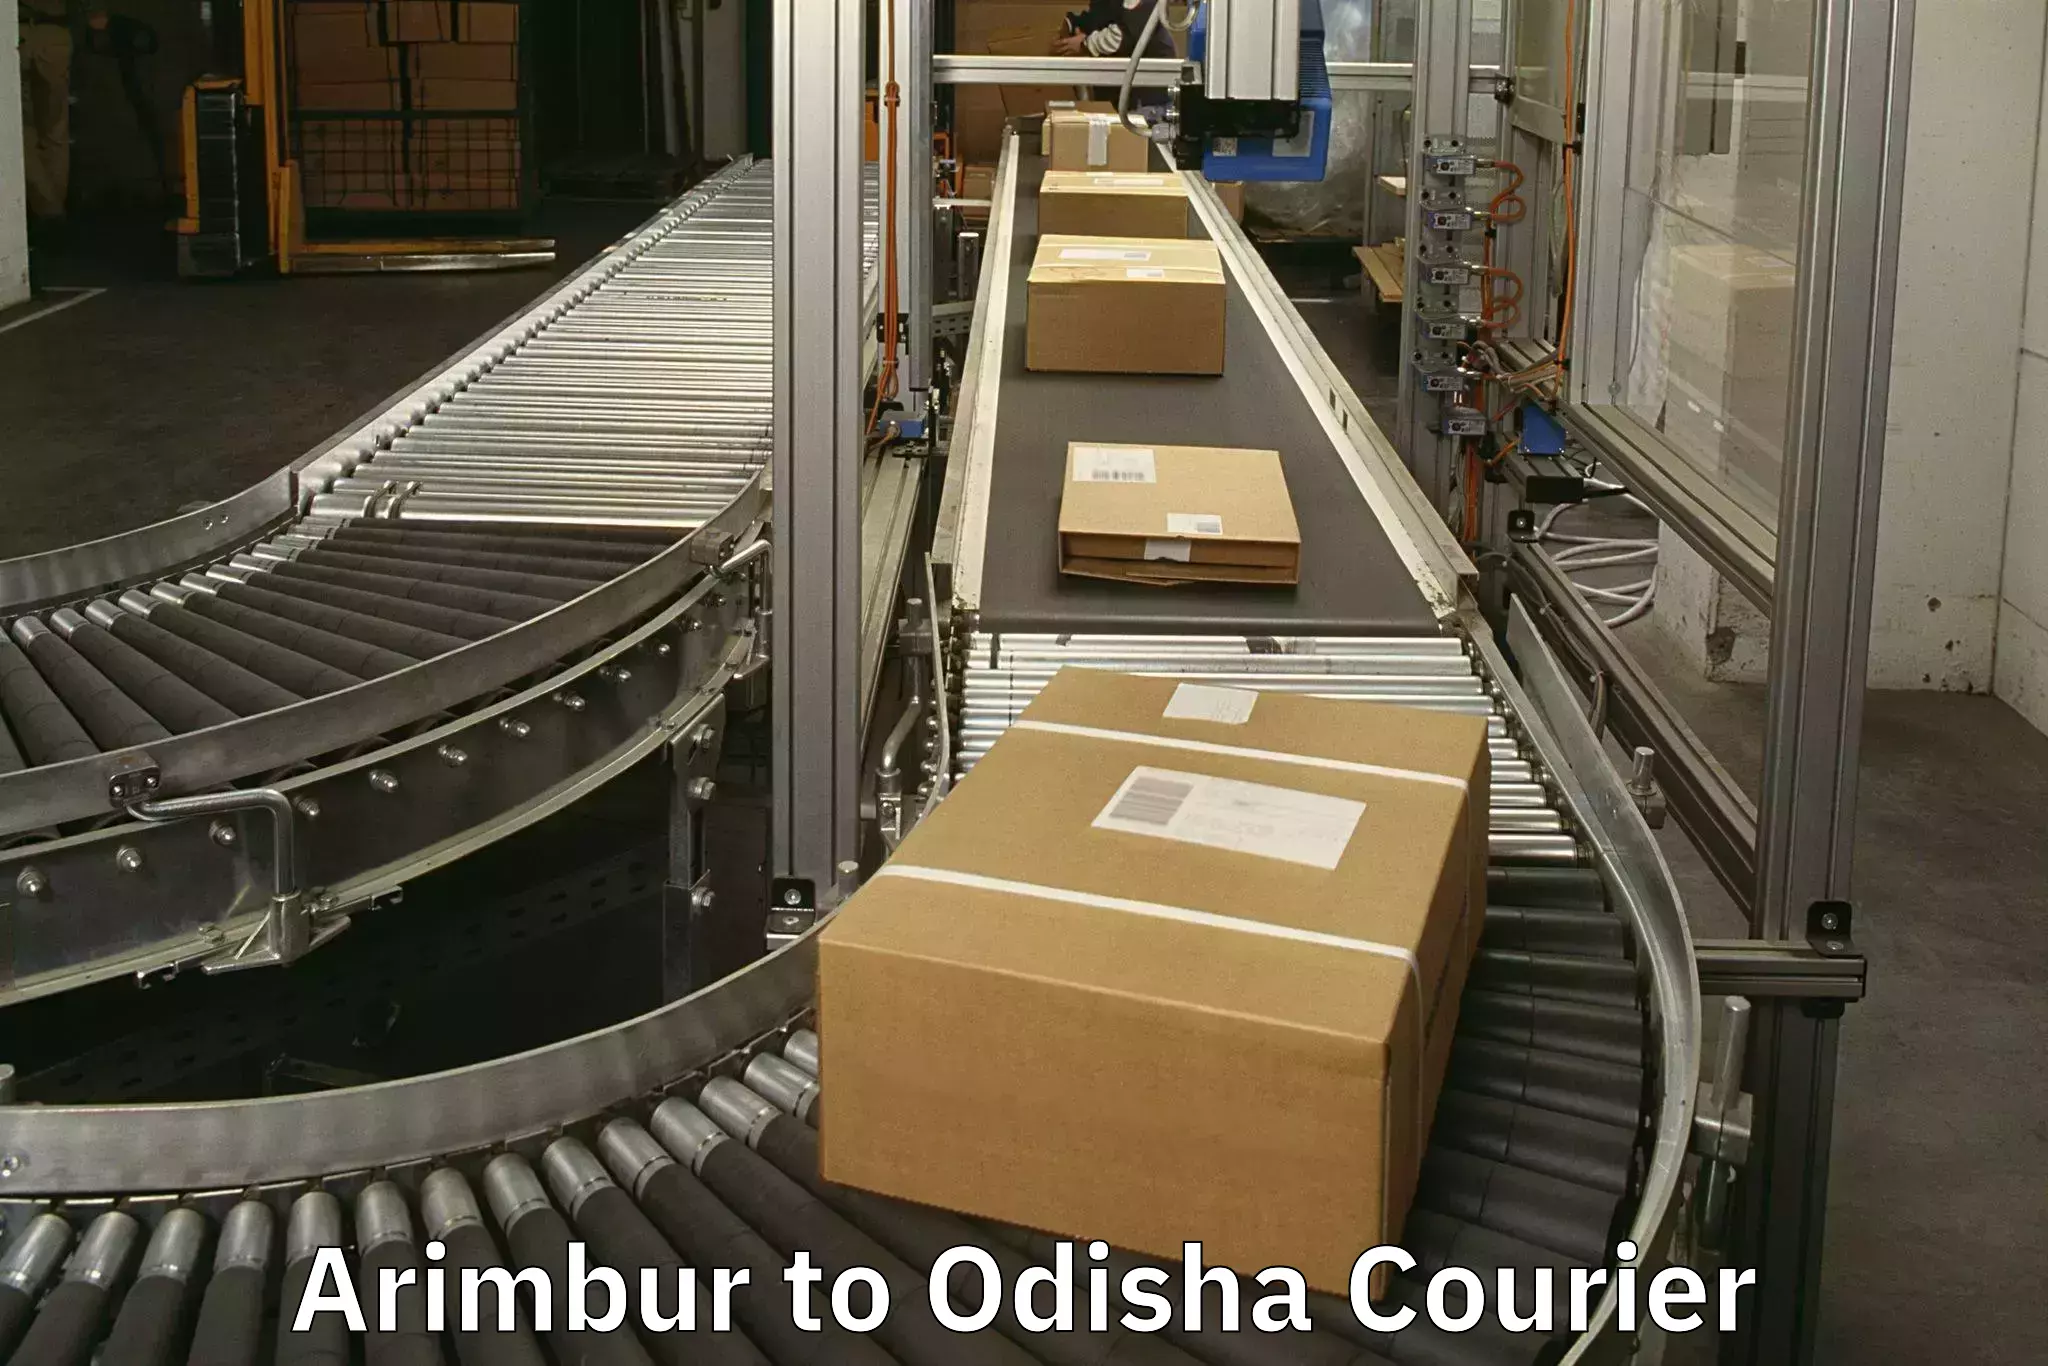 Luggage dispatch service Arimbur to Ukhunda